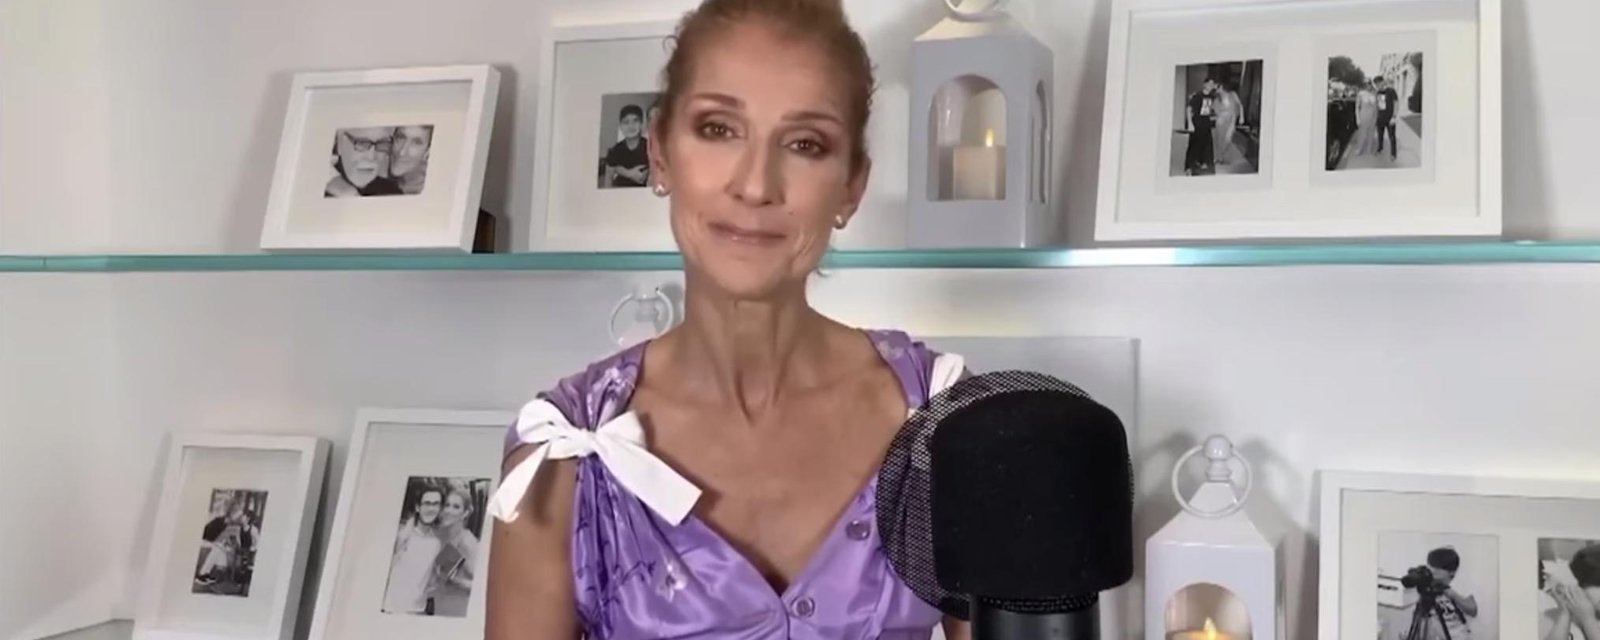 La très courte apparition de Céline Dion à l'émission Une chance qu'on s'a fortement critiquée